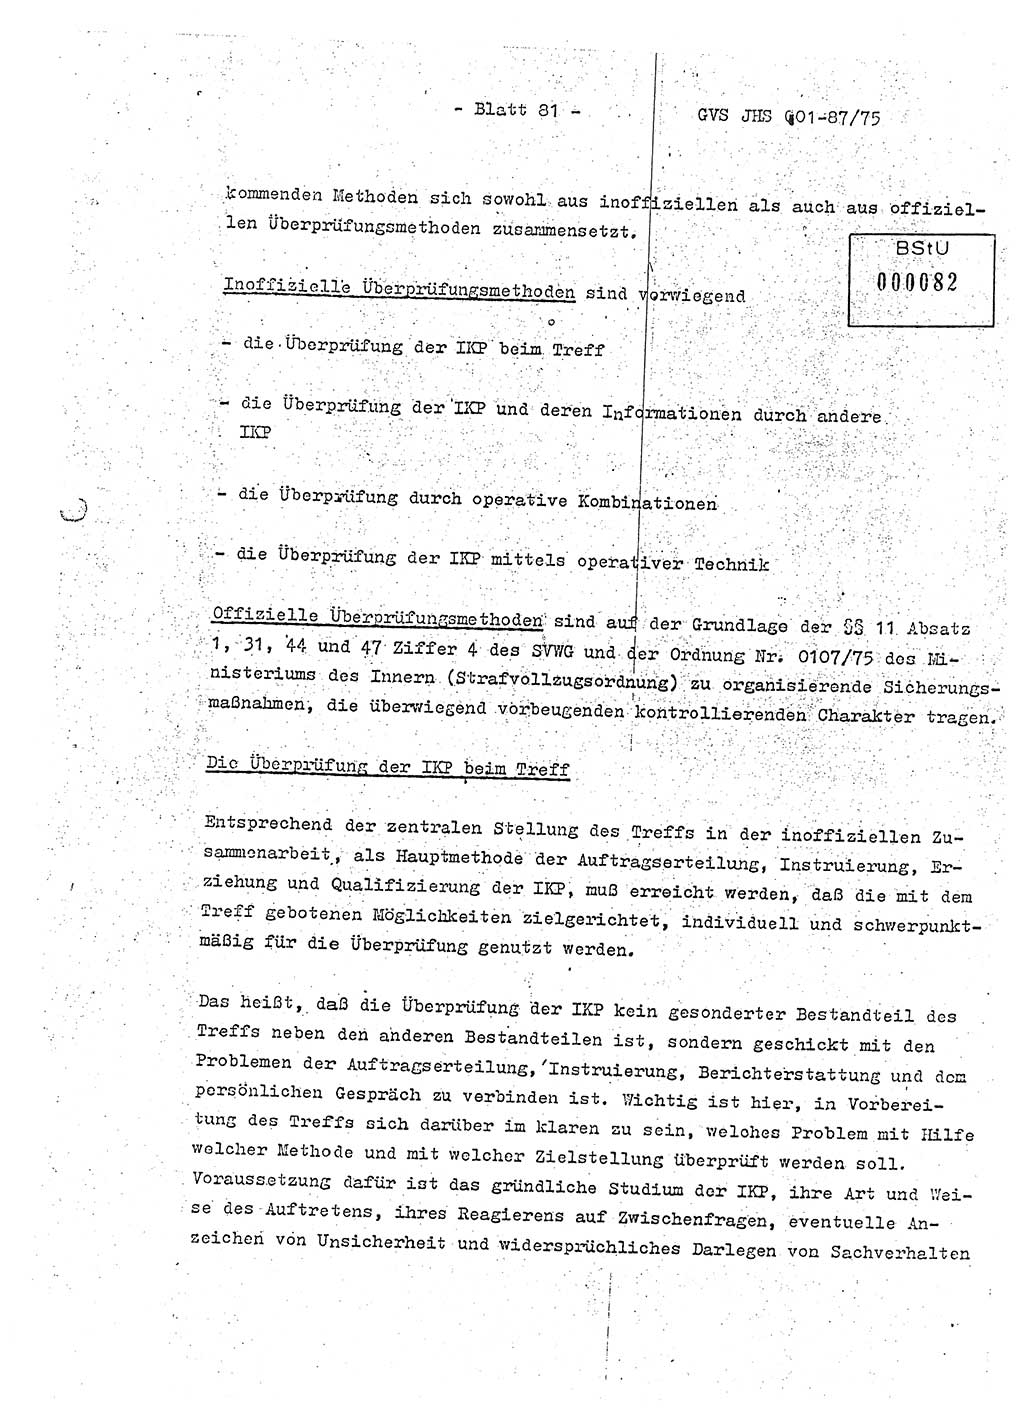 Diplomarbeit Hauptmann Volkmar Heinz (Abt. ⅩⅣ), Oberleutnant Lothar Rüdiger (BV Lpz. Abt. Ⅺ), Ministerium für Staatssicherheit (MfS) [Deutsche Demokratische Republik (DDR)], Juristische Hochschule (JHS), Geheime Verschlußsache (GVS) o001-87/75, Potsdam 1975, Seite 81 (Dipl.-Arb. MfS DDR JHS GVS o001-87/75 1975, S. 81)